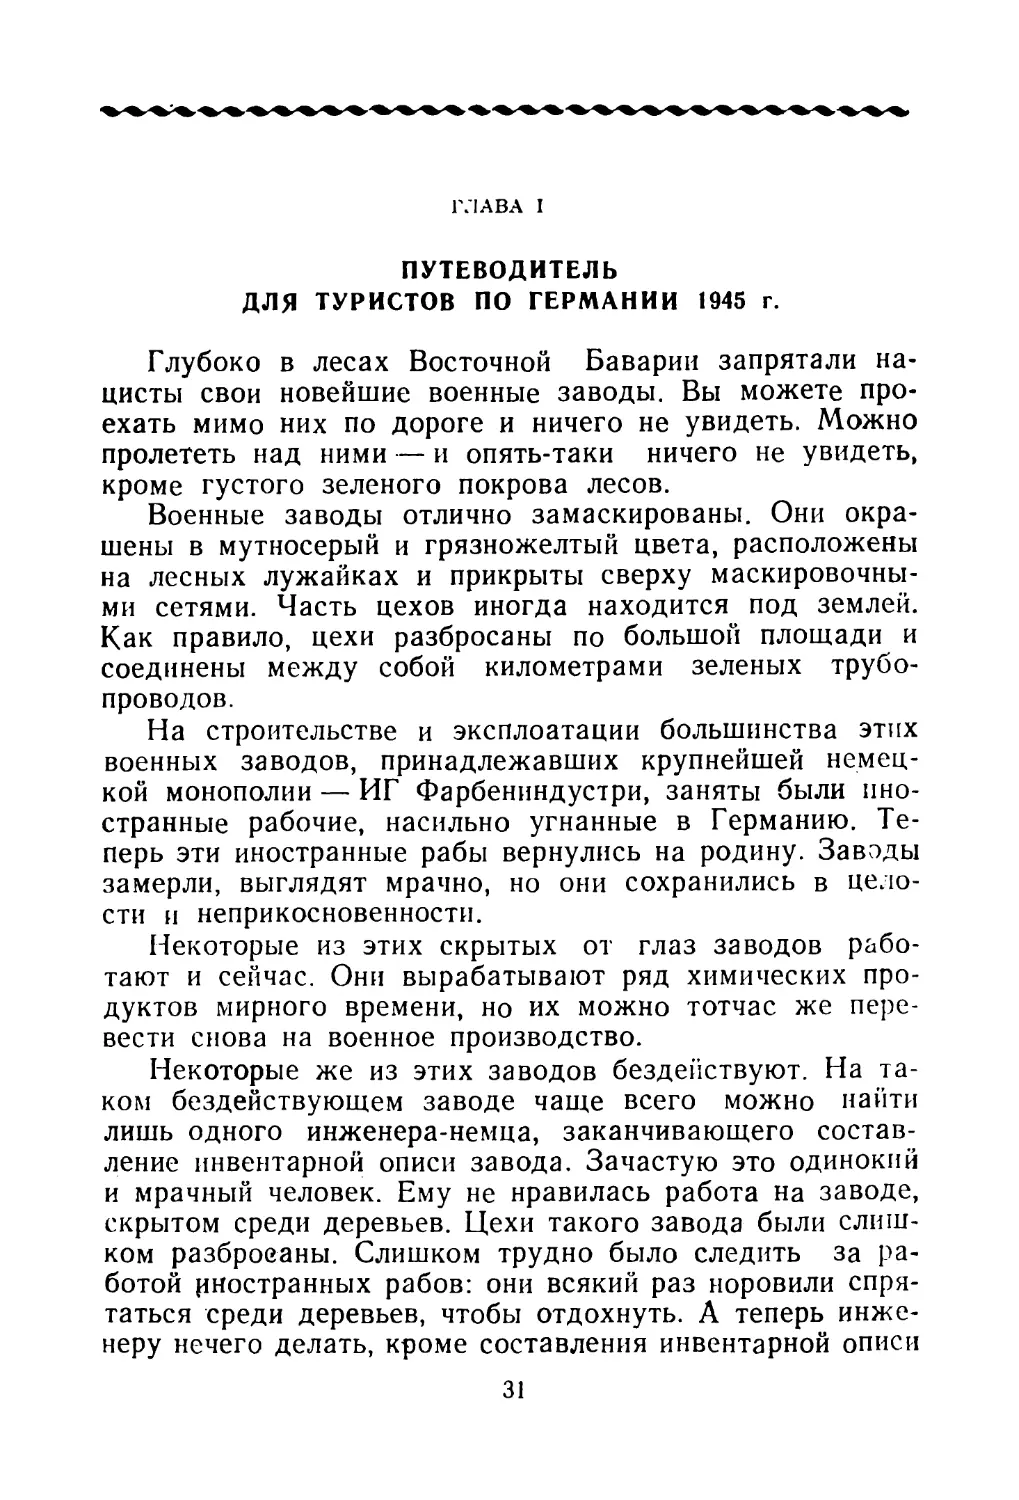 ГЛАВА I. ПУТЕВОДИТЕЛЬ ДЛЯ ТУРИСТОВ ПО ГЕРМАНИИ 1945 г.